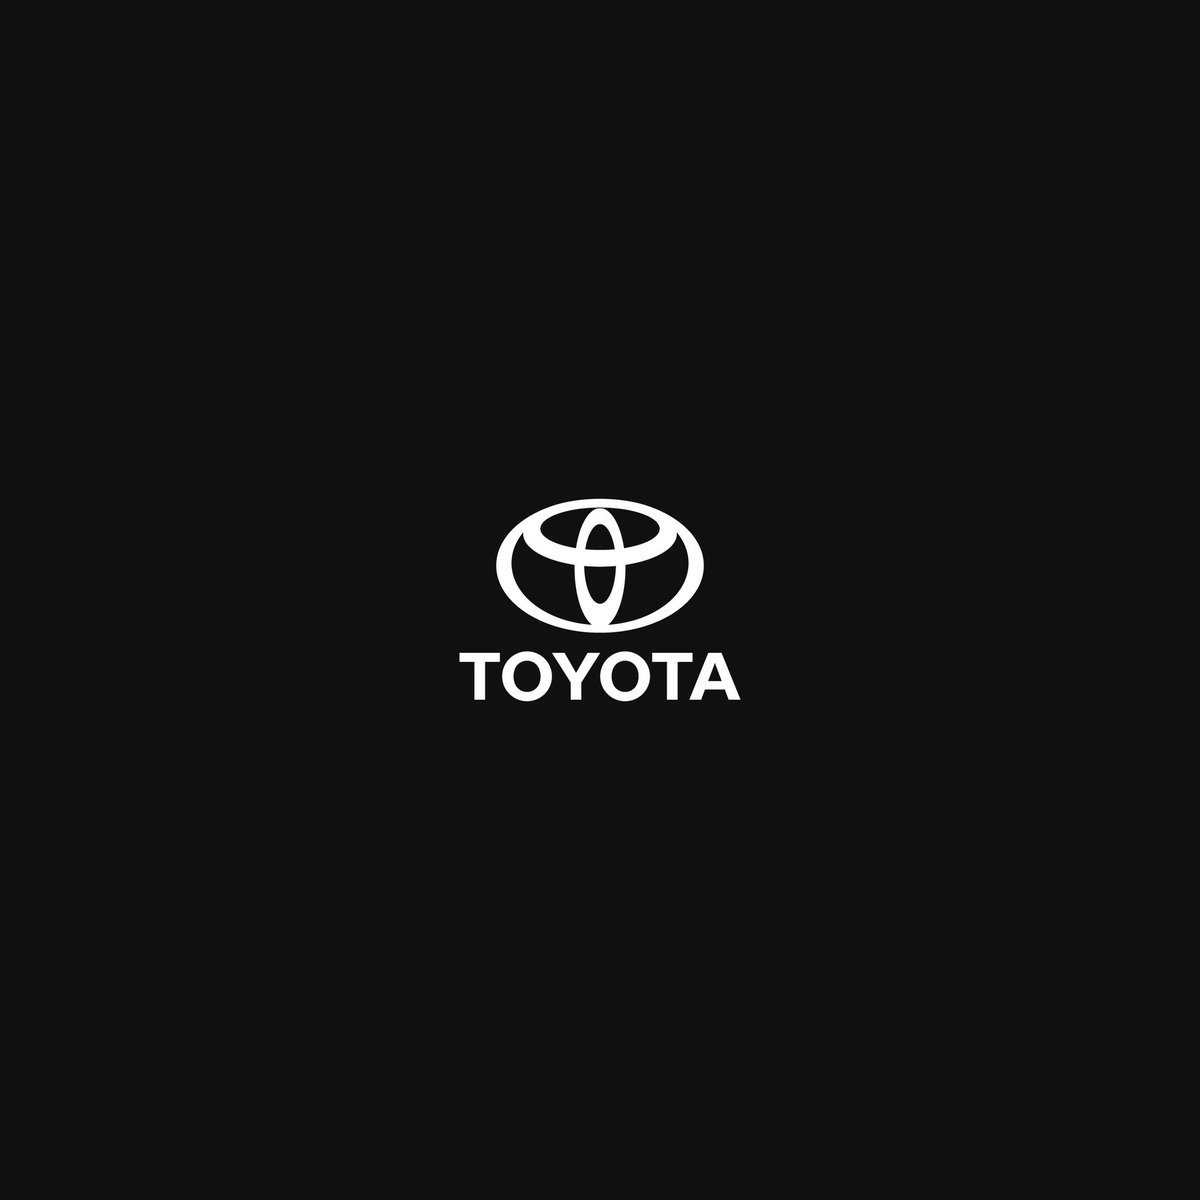 Bạn đang sử dụng Toyota Fortuner và muốn thay đổi nền đen sang trắng trên iPhone 6s của mình? (@Toyota_Fortuner) / Twitter cung cấp một video chỉ dẫn chi tiết để bạn có thể thực hiện việc này. Hãy theo dõi video để biết thêm chi tiết và chiếc iPhone 6s của bạn sẽ càng trở nên sang trọng hơn.